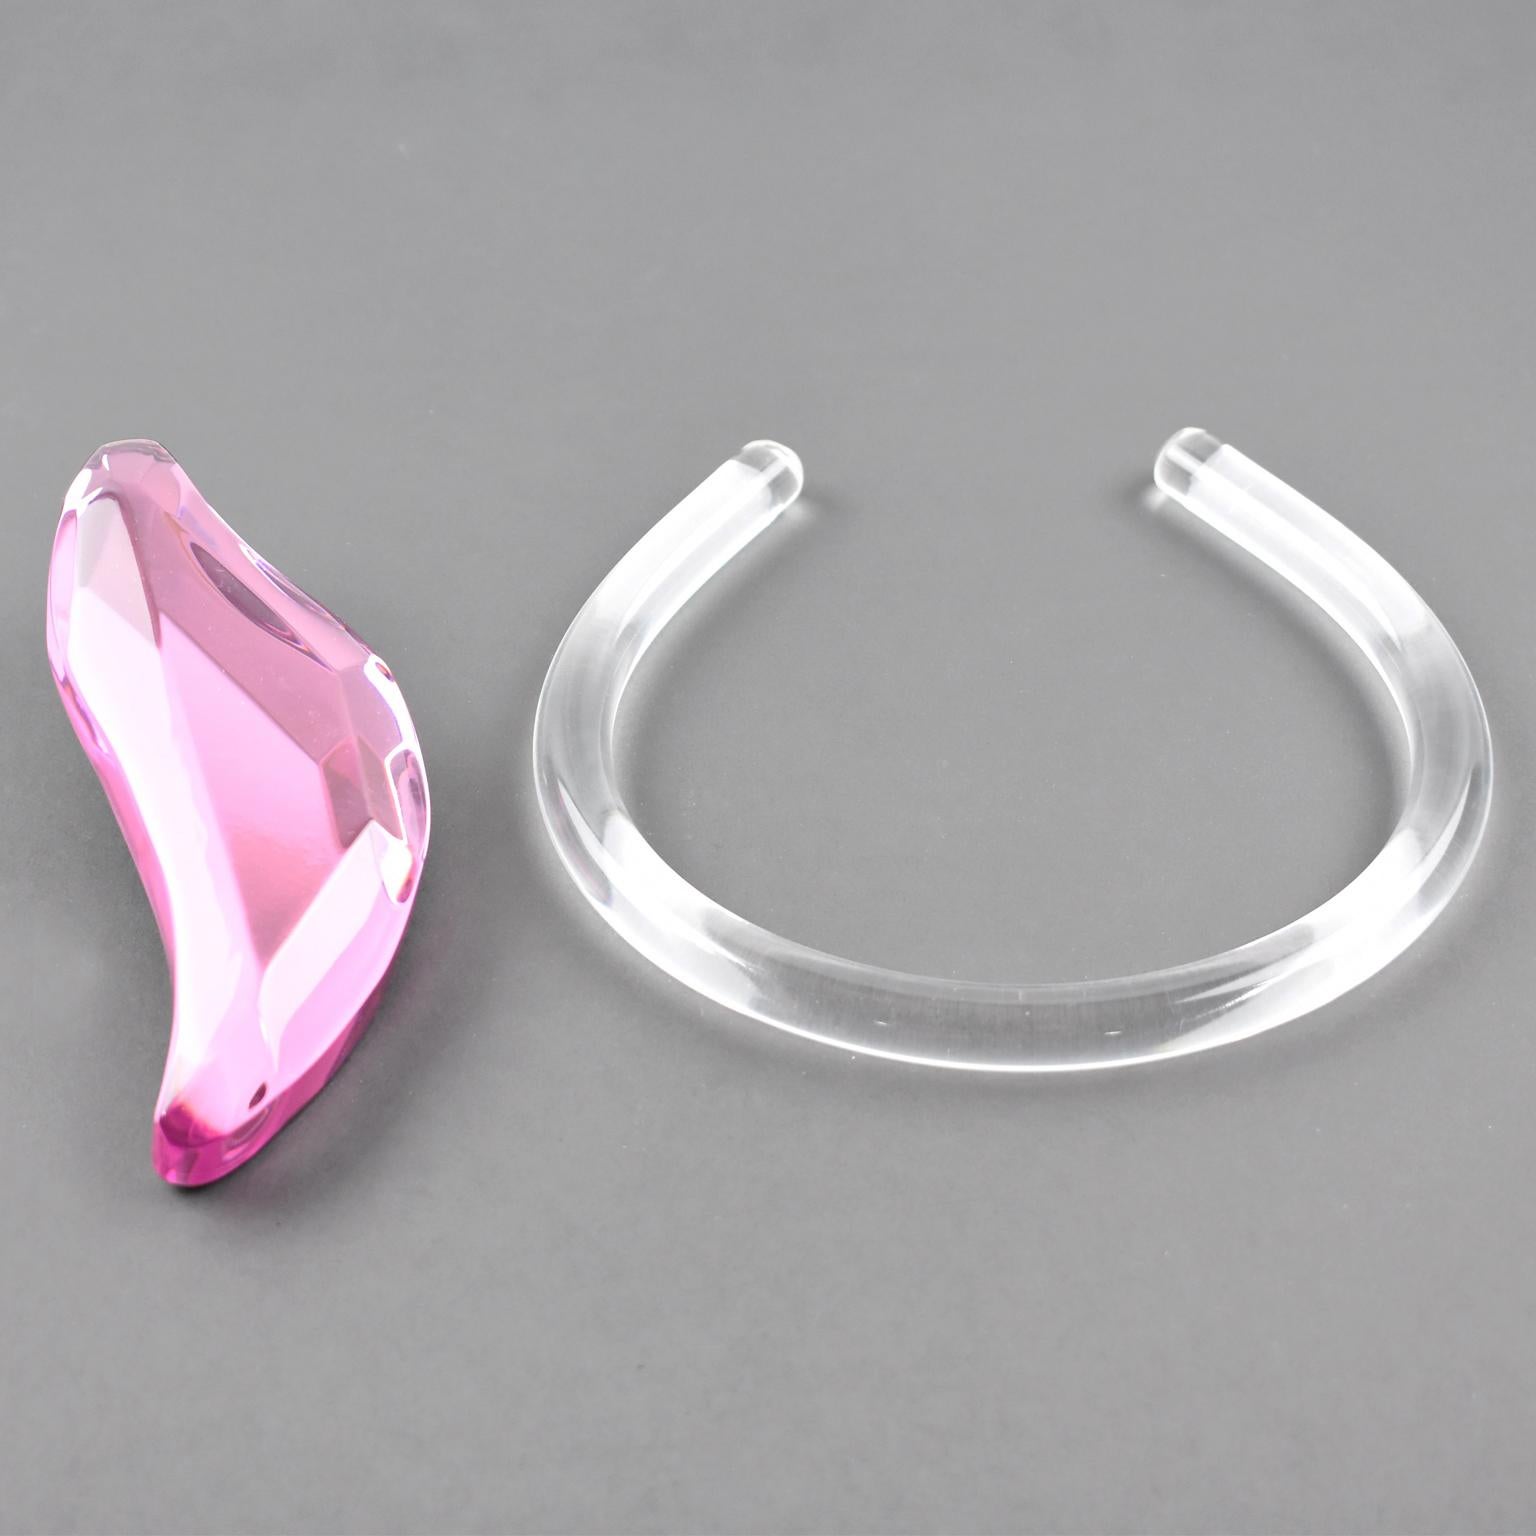 Kaso Sculptural Pink Lucite Rigid Choker Pendant Necklace For Sale 1